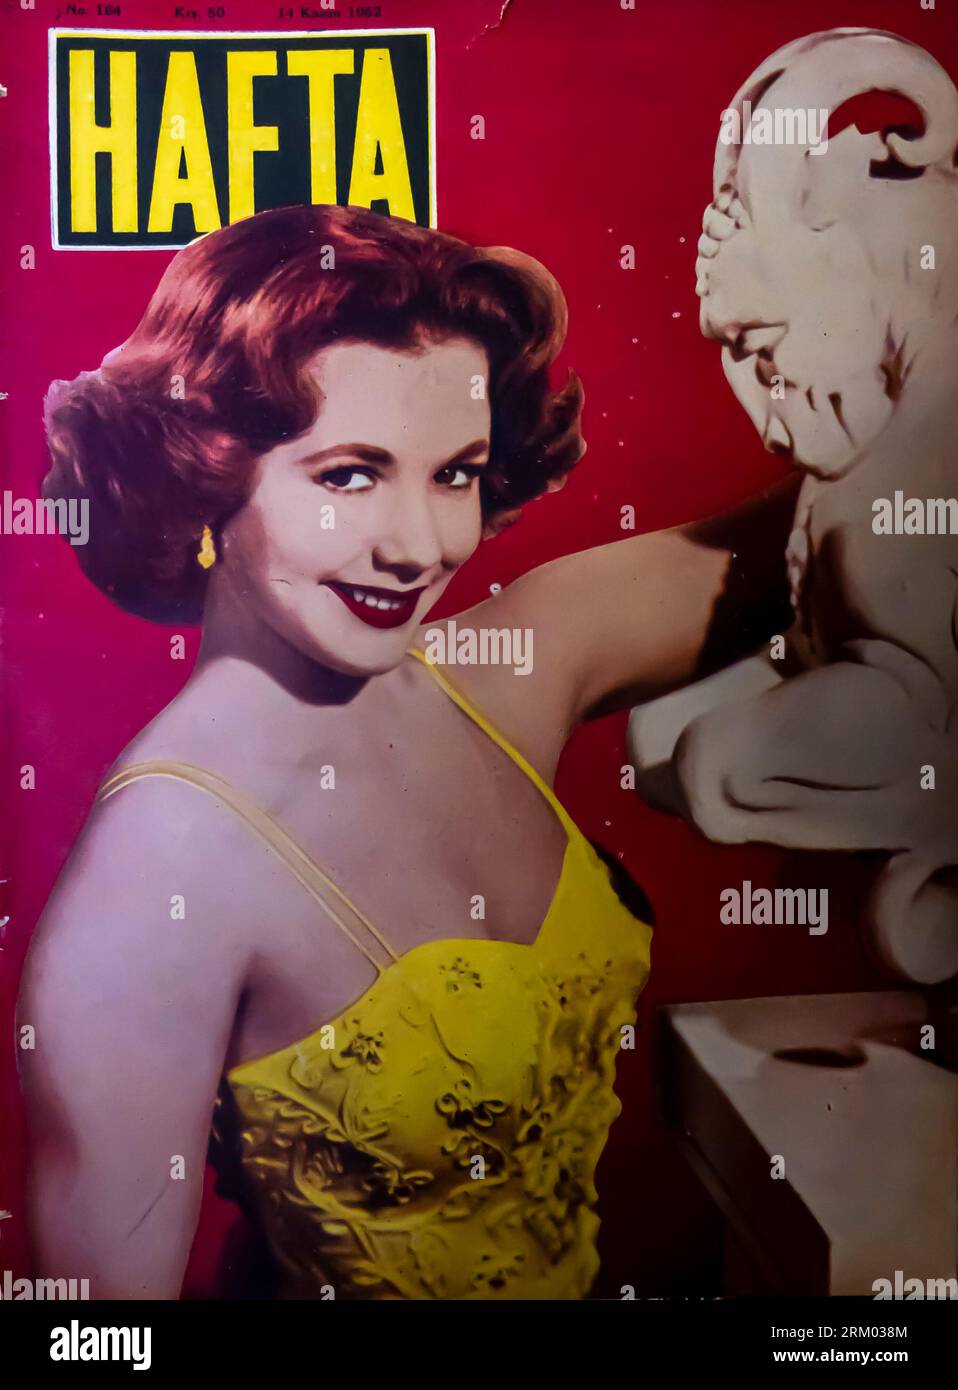 Hafta turc Lifestyle et couverture de magazine de cinéma avec l'actrice américaine Piper Laurie 1952 Banque D'Images